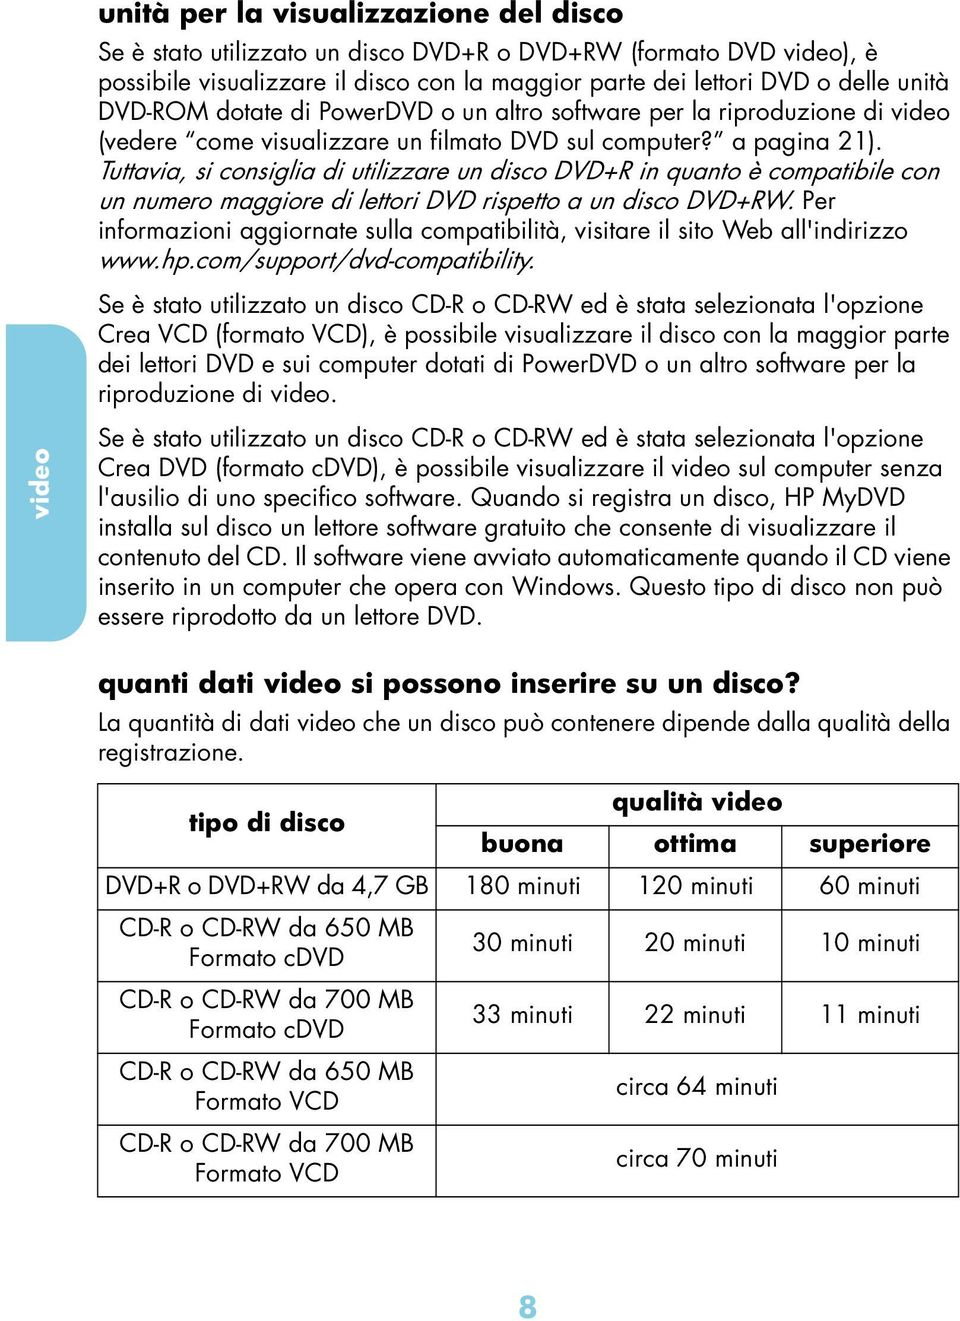 Tuttvi, si onsigli di utilizzre un diso DVD+R in qunto è omptiile on un numero mggiore di lettori DVD rispetto un diso DVD+RW.